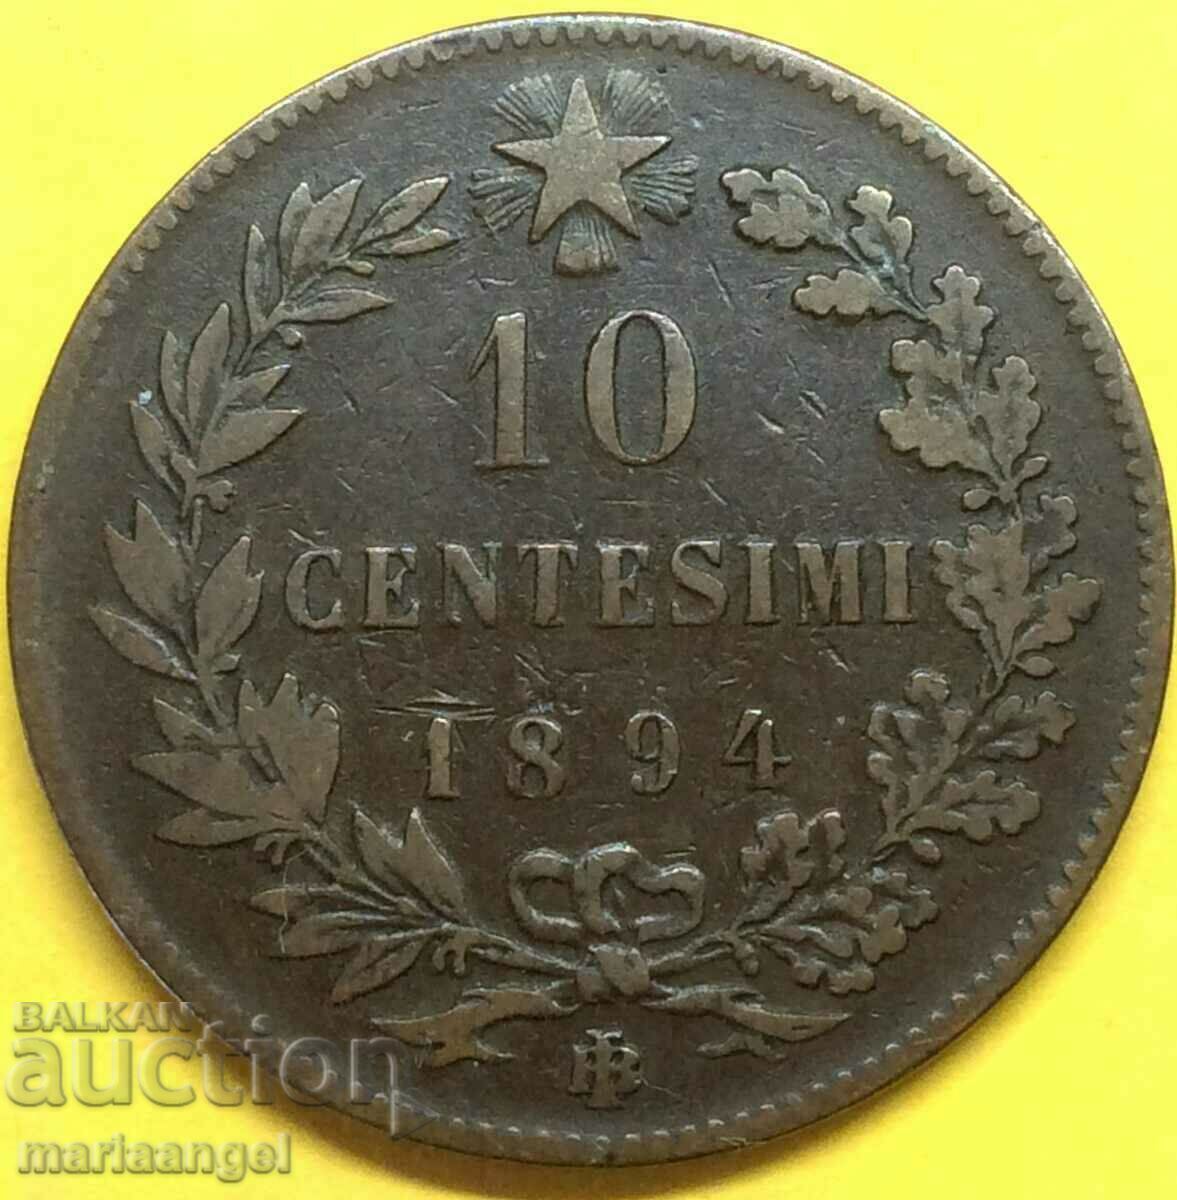 Italy - 10 centesimi 1894 Umberto I 30mm